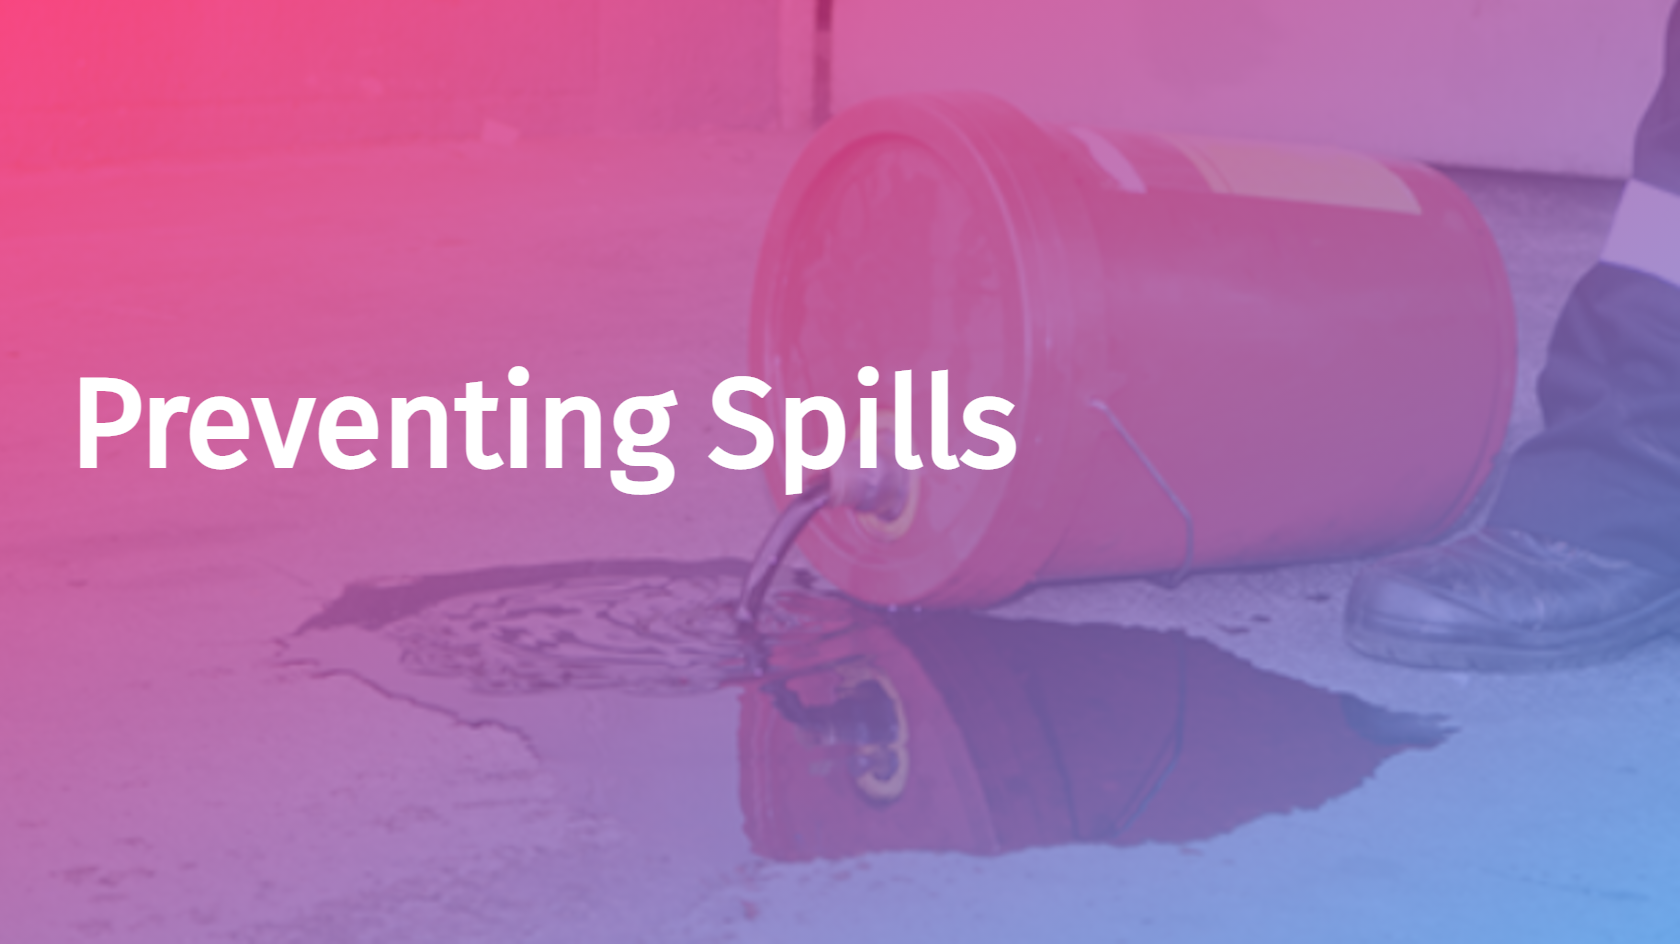 Spanish - Preventing Spills